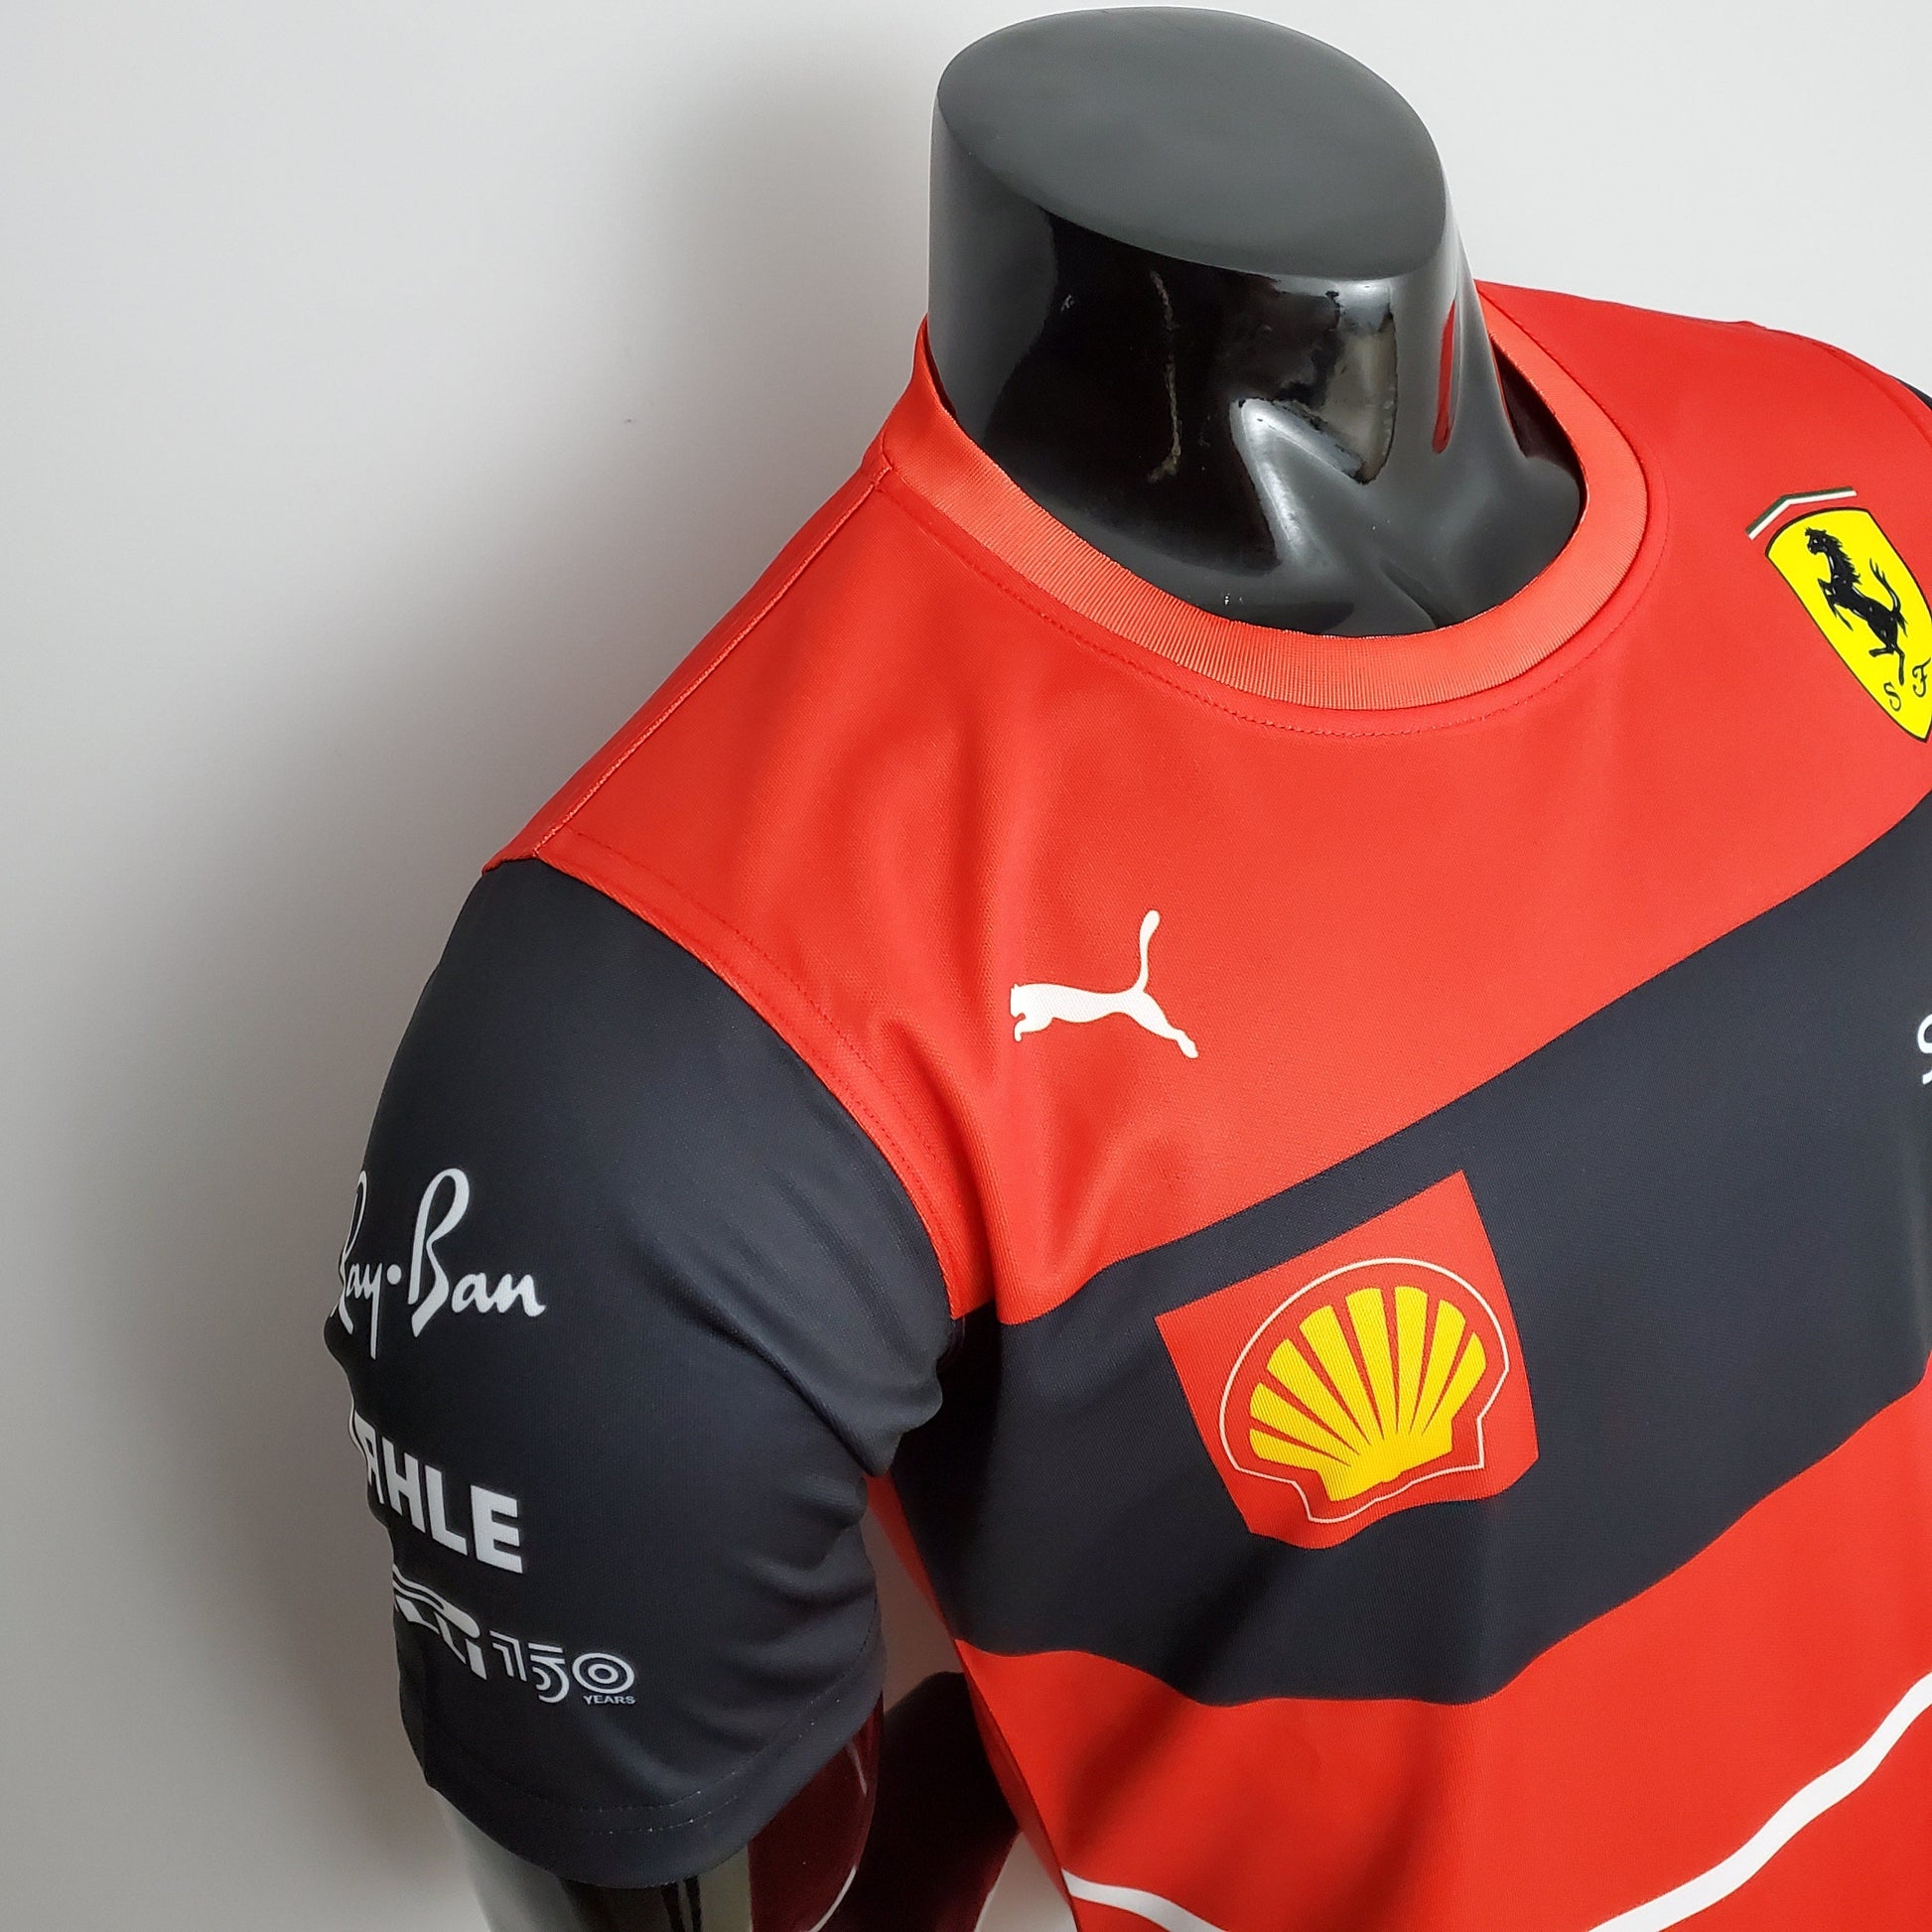 Camiseta Ferrari #Charles Leclerc 16 2022 – camisetasfutbolbaloncesto